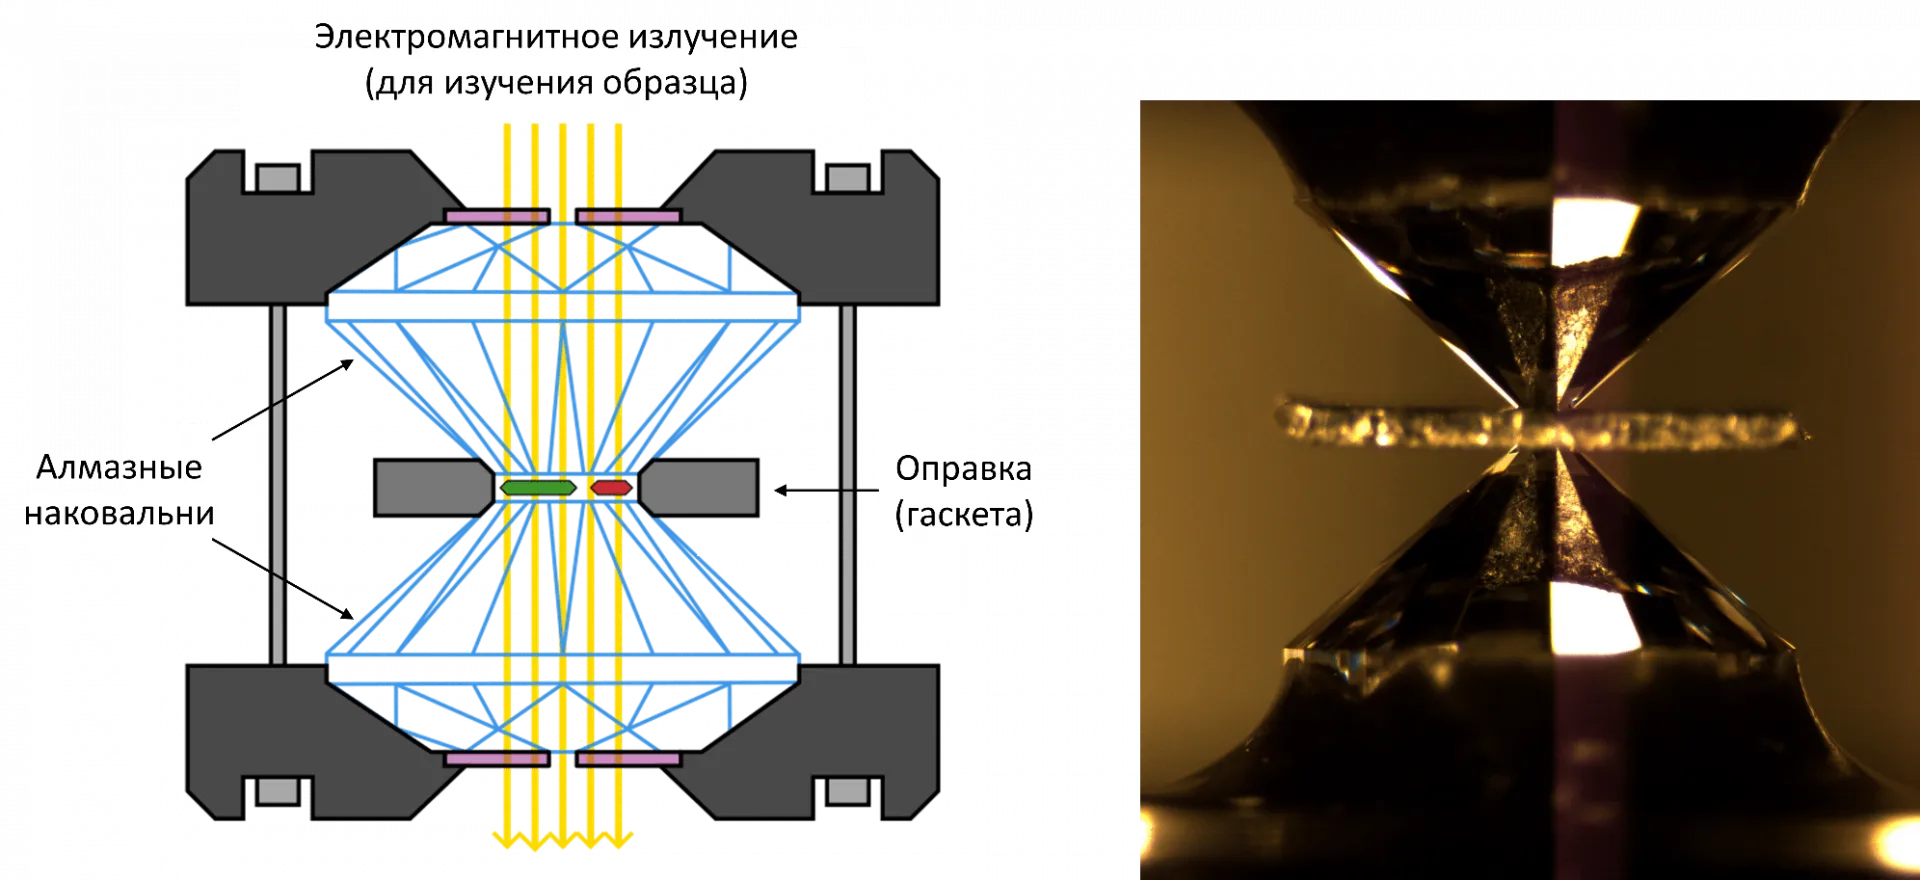 Принципиальная схема ячейки с алмазными наковальнями и фотография ячейки с помещенным внутрь образцом. 